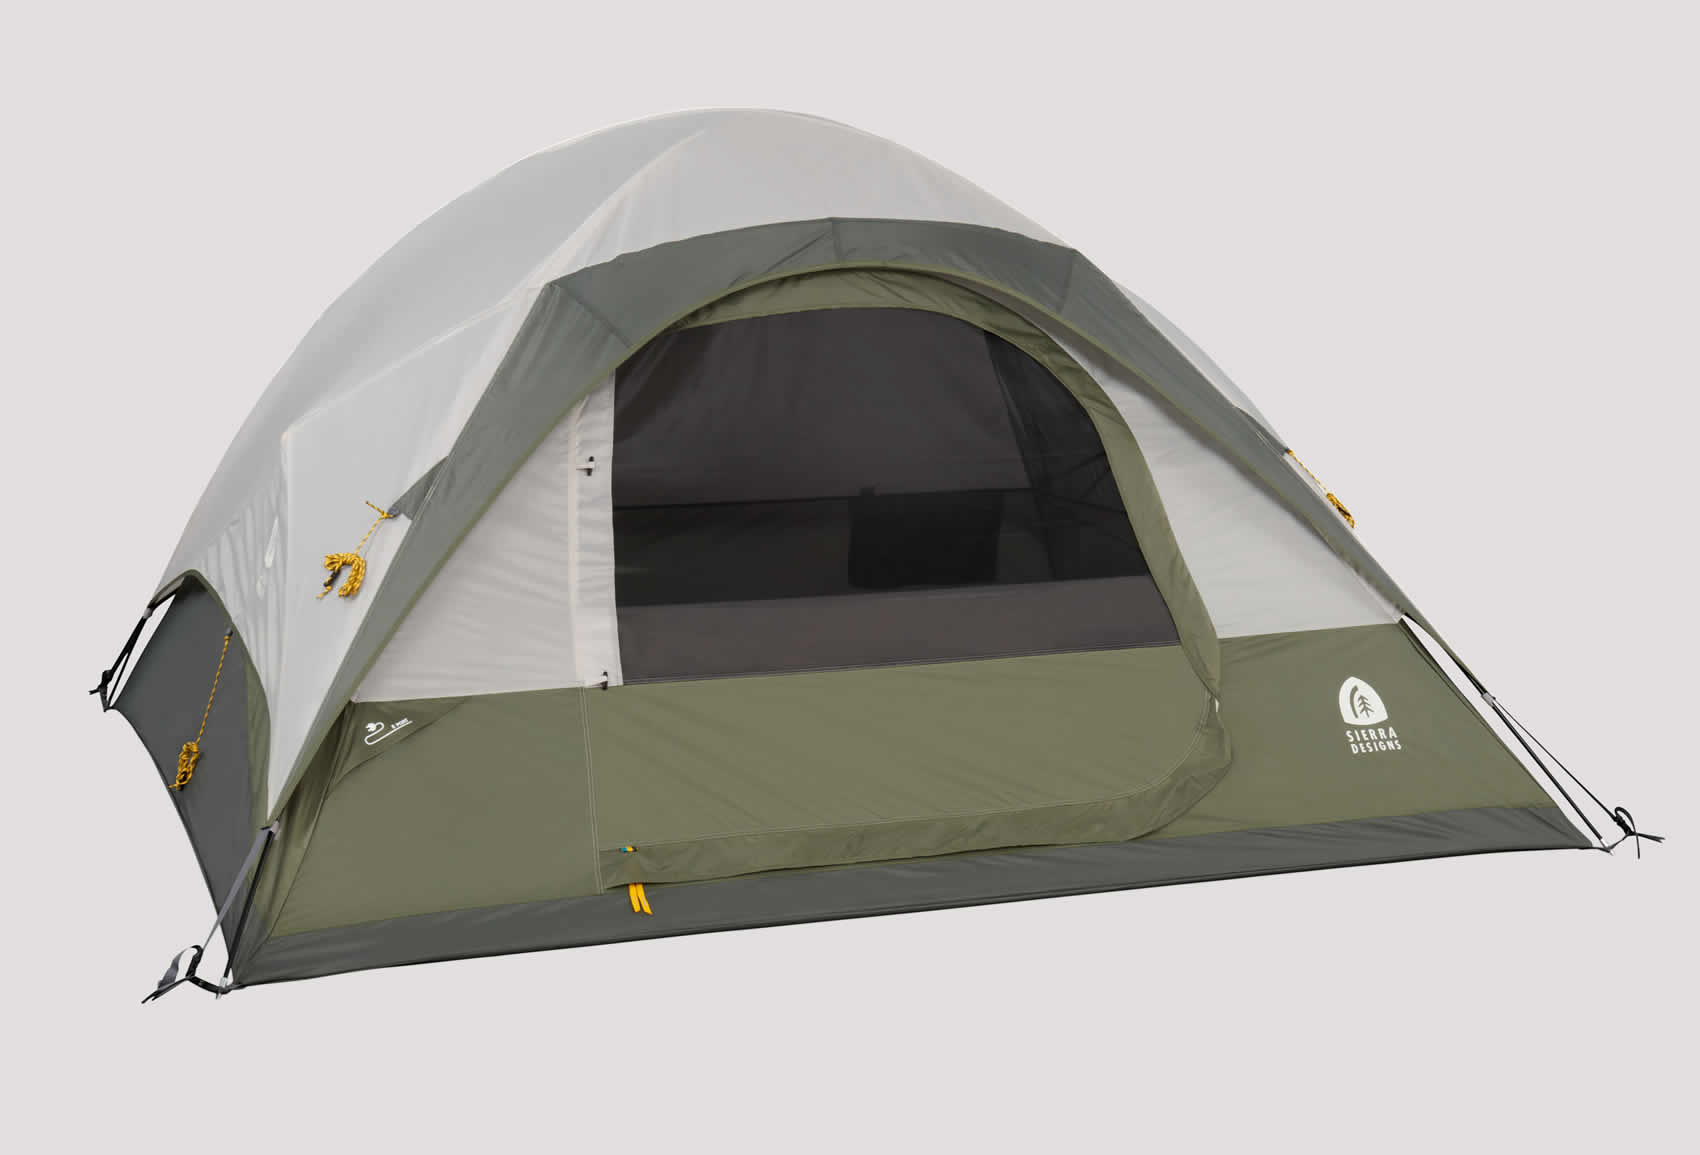 Sopstveni šator / Own tent